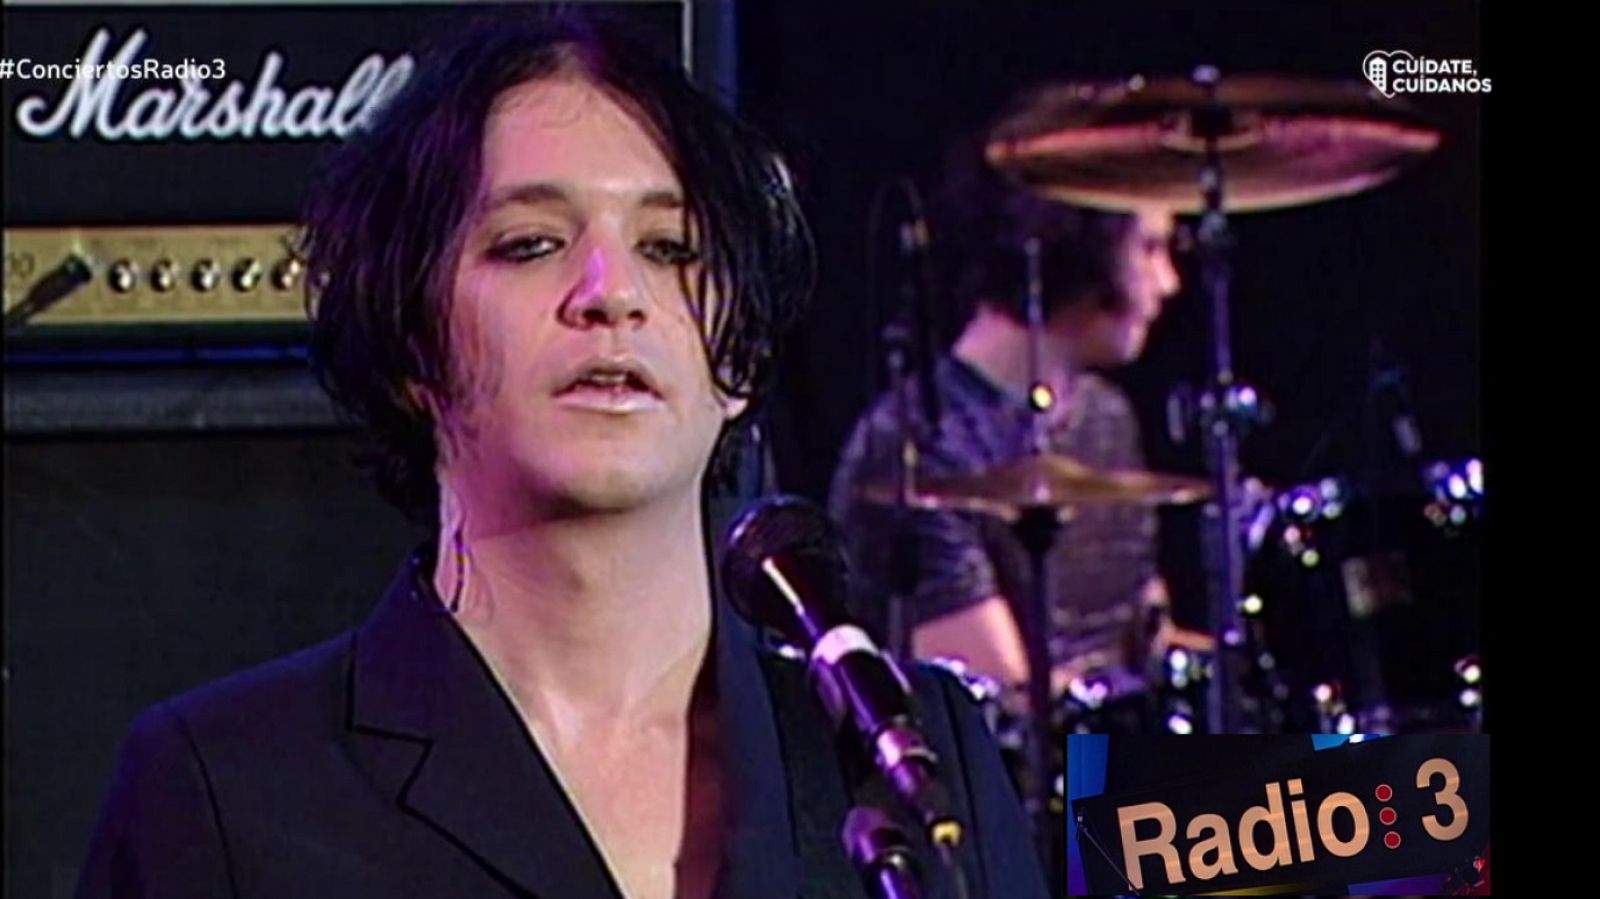 Los conciertos de Radio 3 - Placebo (1998) - RTVE.es